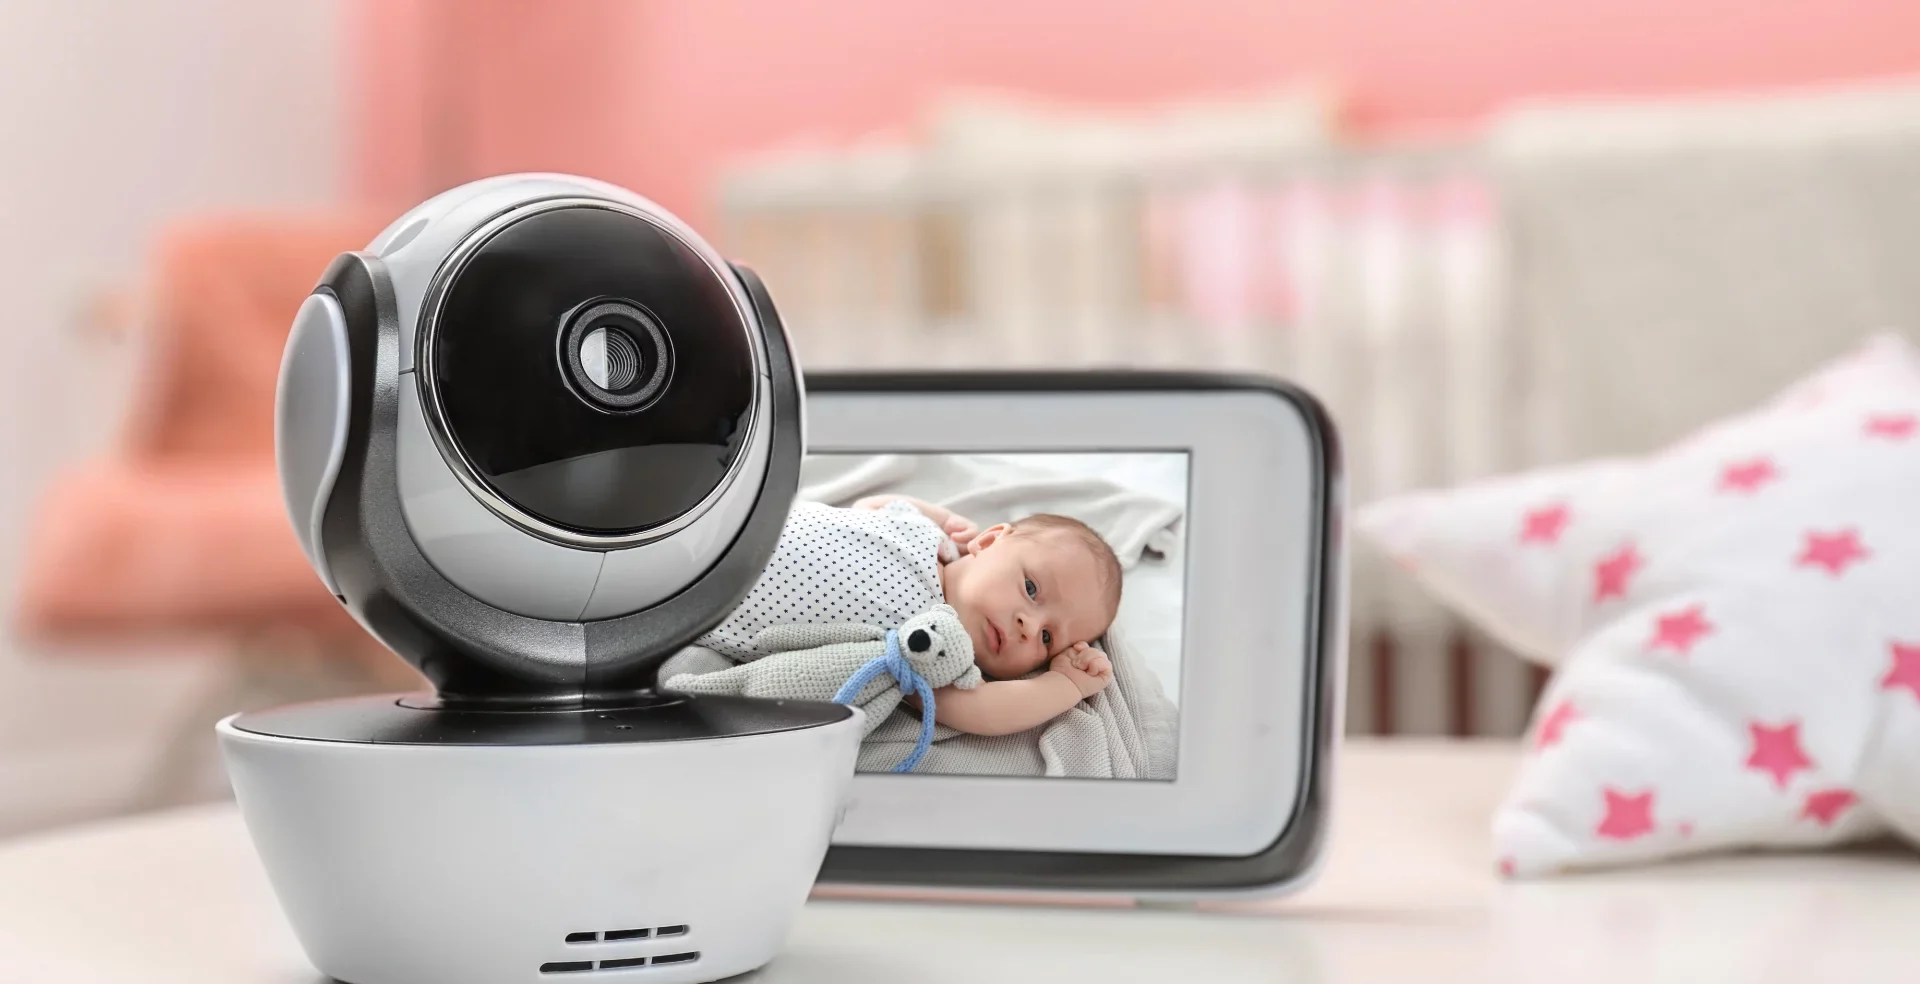 Moniteur vidéo 1080P sans wifi pour bébé : Tranquillité d'esprit